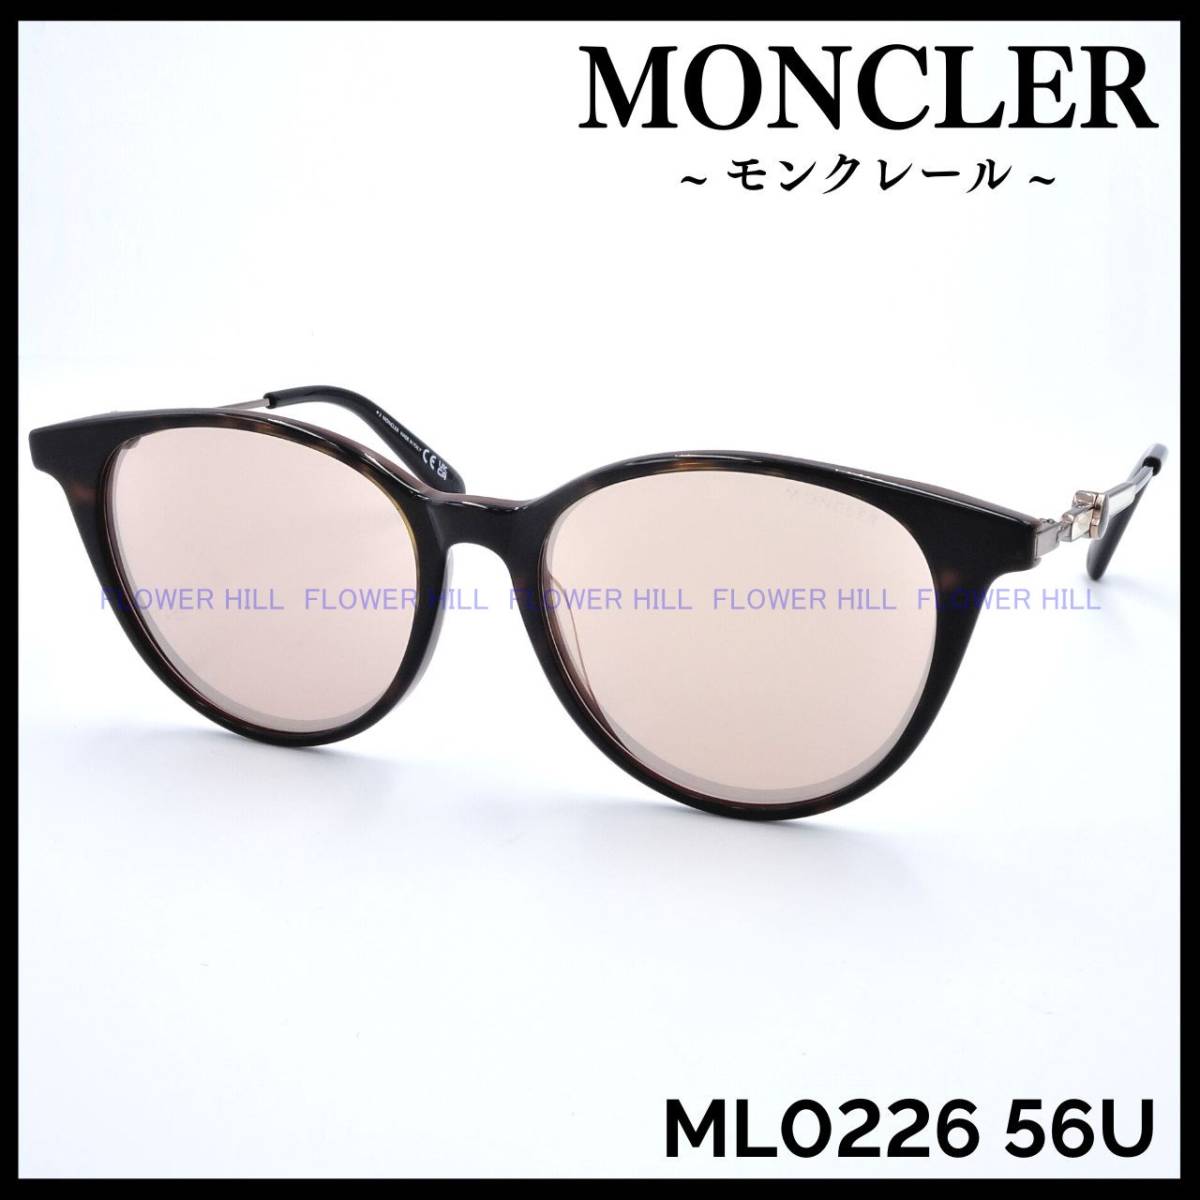 【新品・送料無料】モンクレール MONCLER サングラス ML0226 56U ハバナ/パールオレンジ イタリア製 メンズ レディース